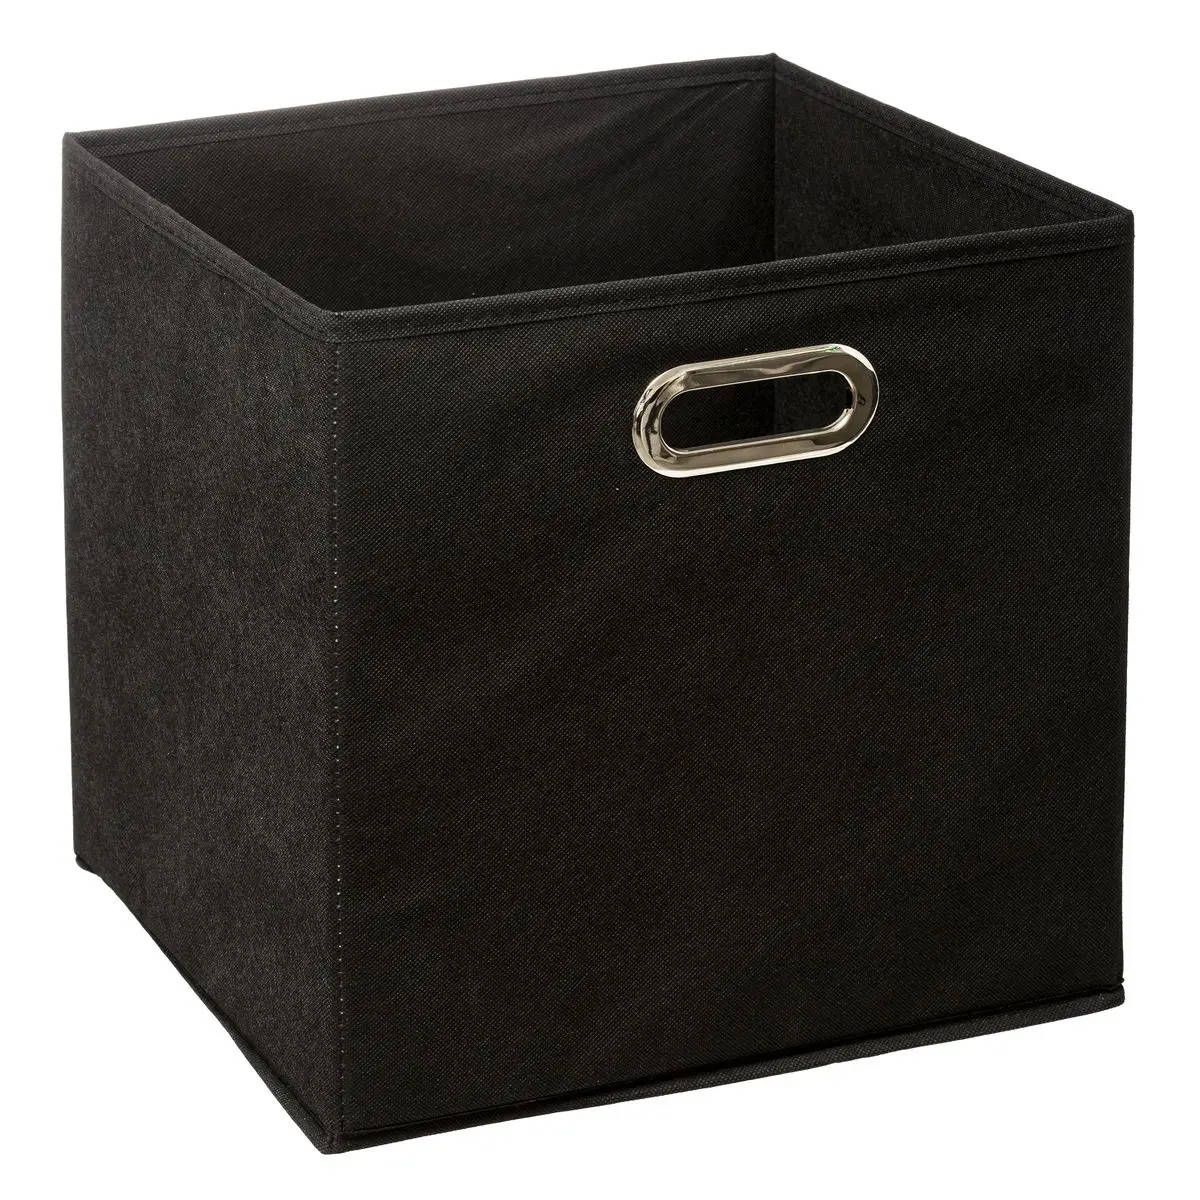 5five Simply Smart Úložný box, černý, textilní, 31 x 31 cm - EMAKO.CZ s.r.o.